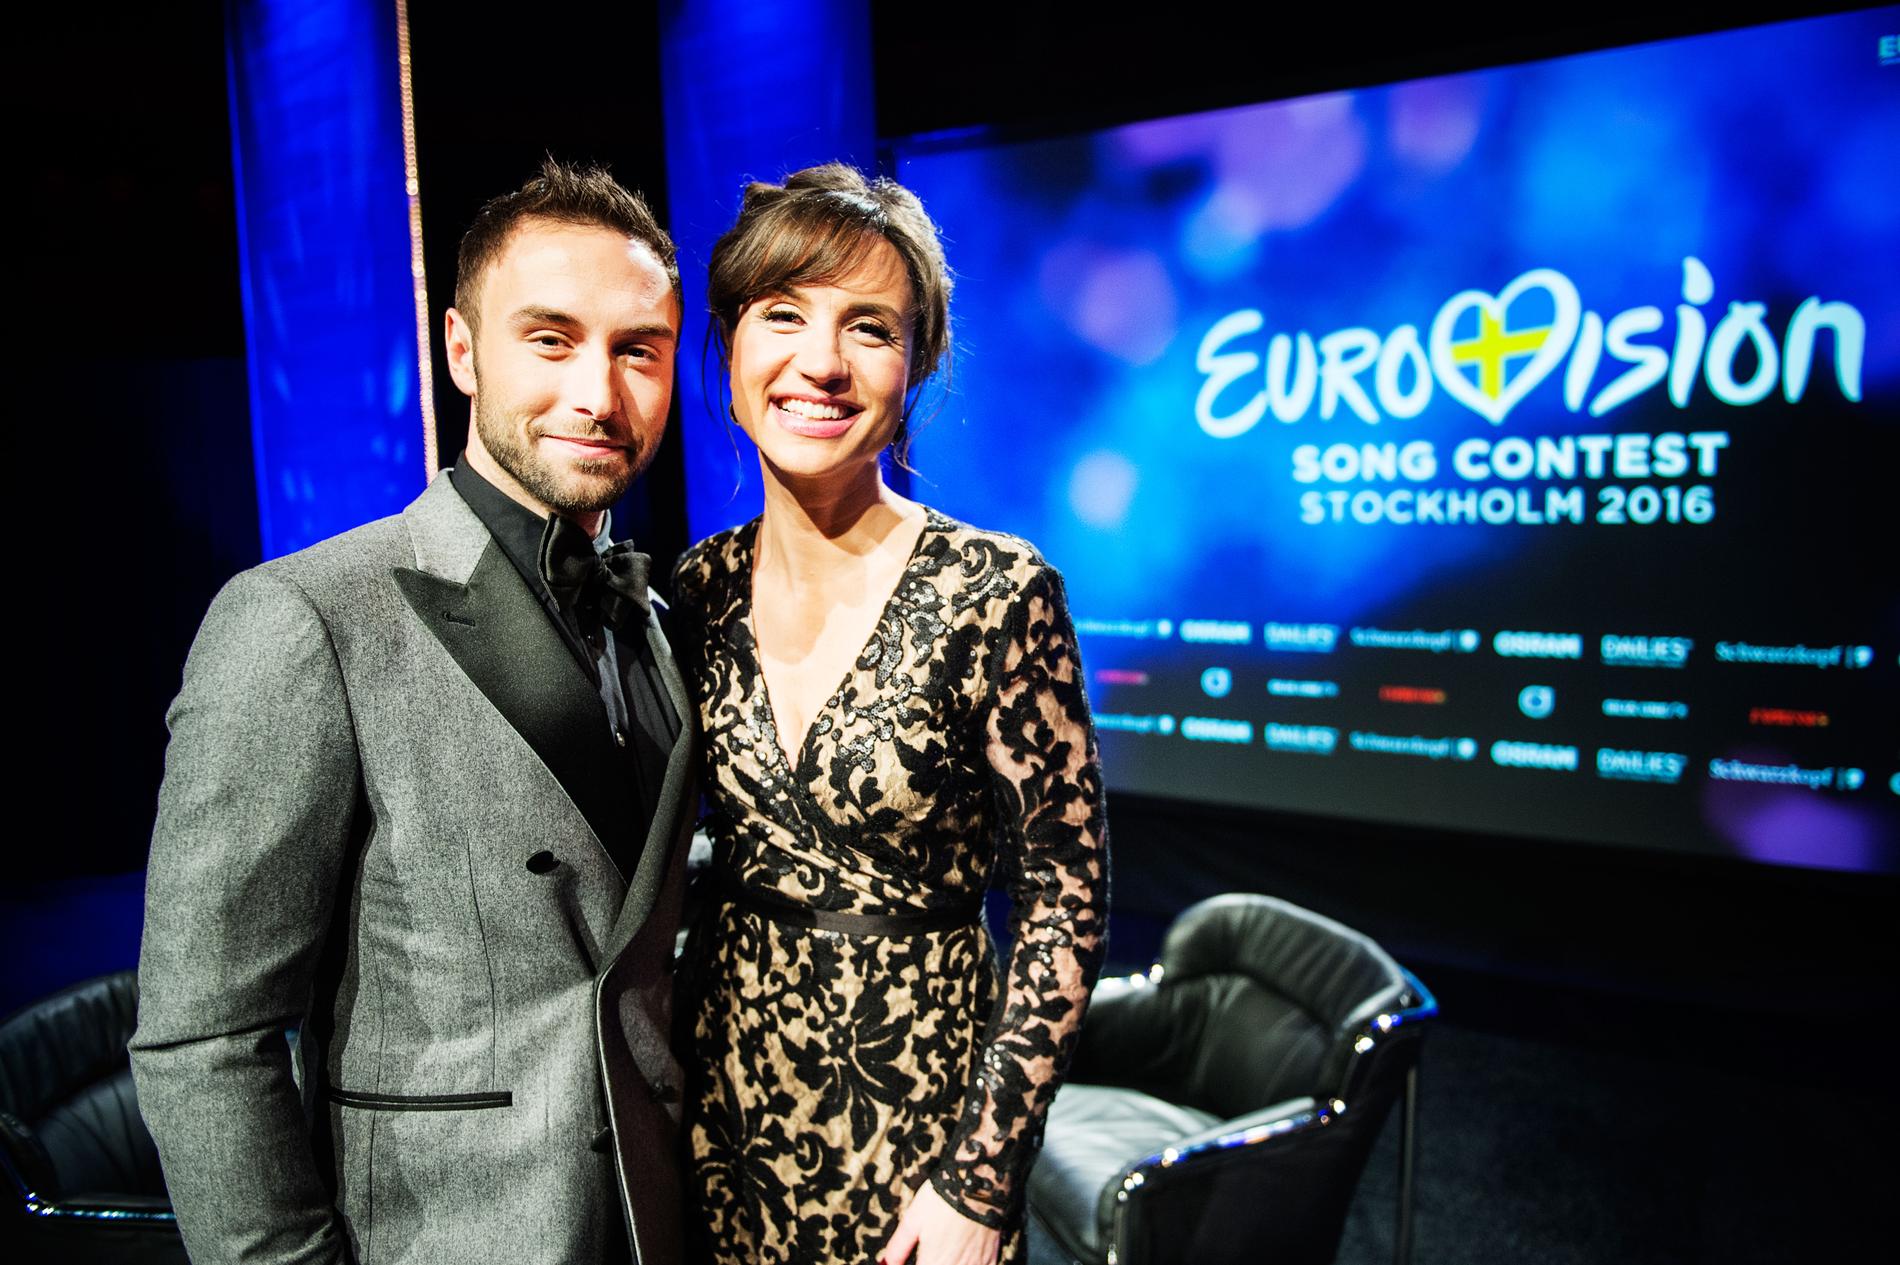 Måns Zelmerlöw och Petra Mede är programledare för Eurovision Song Contest 2016 i Stockholm.